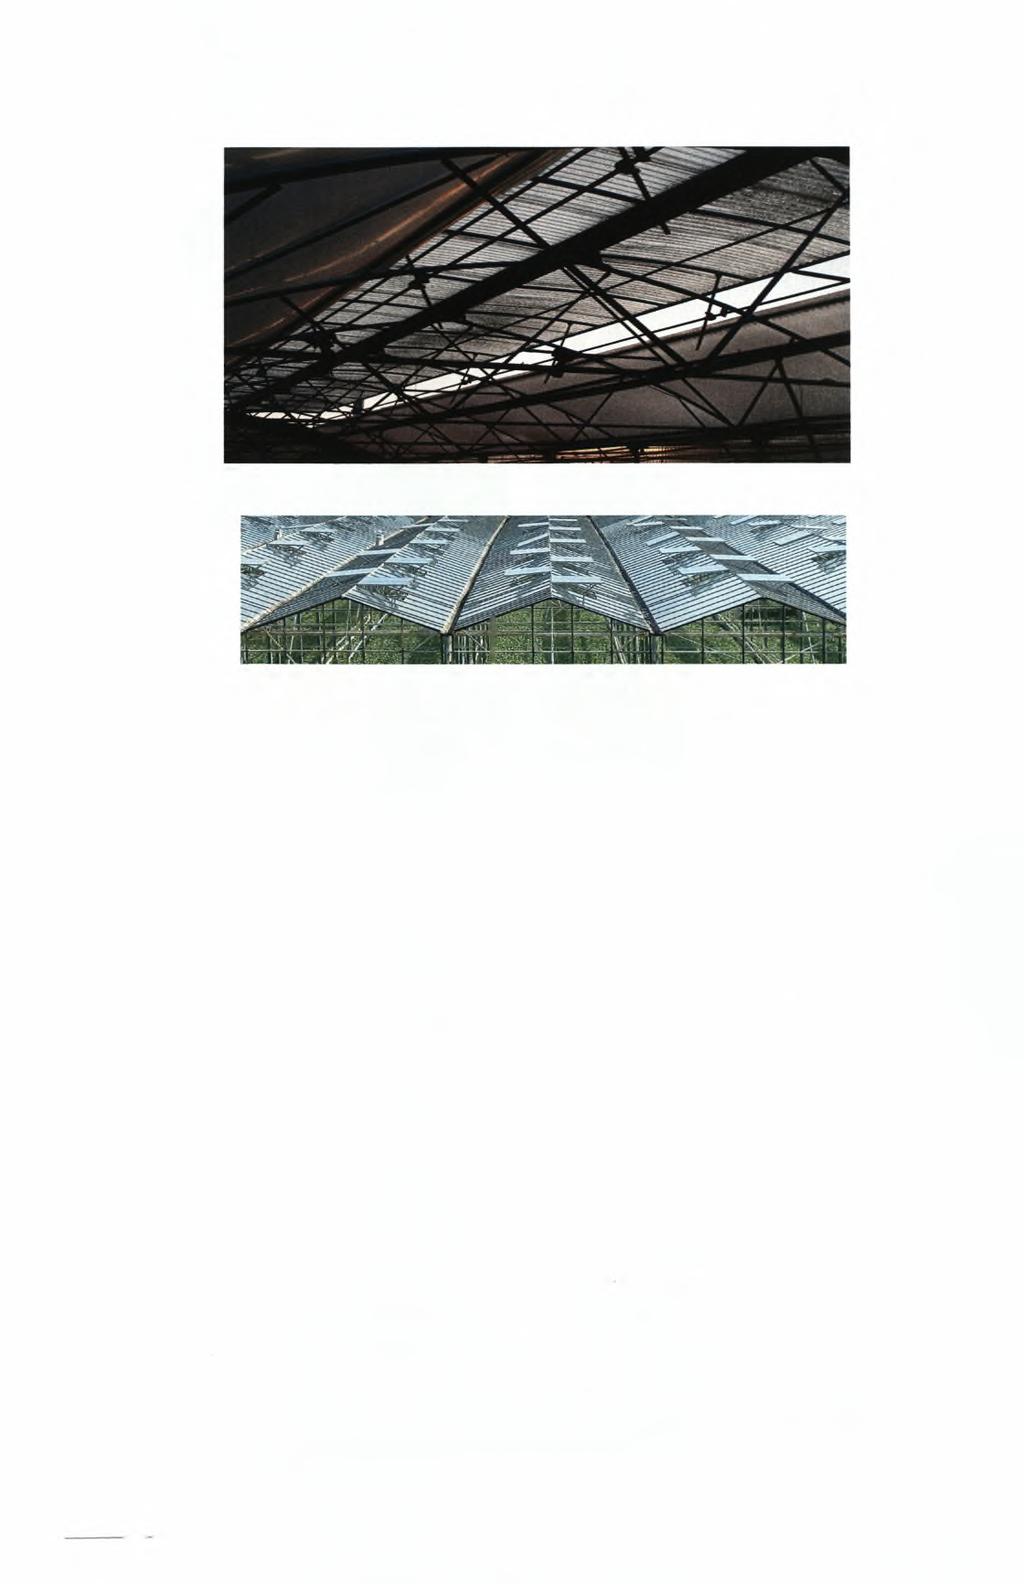 Παθητικός αερισμός μέσω των ανοιγμάτων οροφής Παθητικός αερισμός μέσω των ανοιγμάτων οροφής (12) Συστήματα σκίασης: Αυτά τα συστήματα λειτουργούν μειώνοντας τη ποσότητα της φωτεινής ακτινοβολίας και